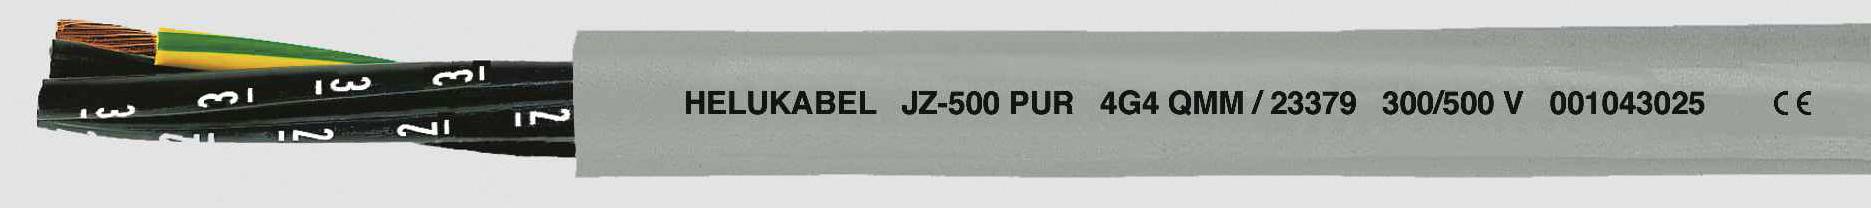 HELUKABEL JZ-500 PUR Steuerleitung 4 G 0.75 mm² Grau 23332-500 500 m